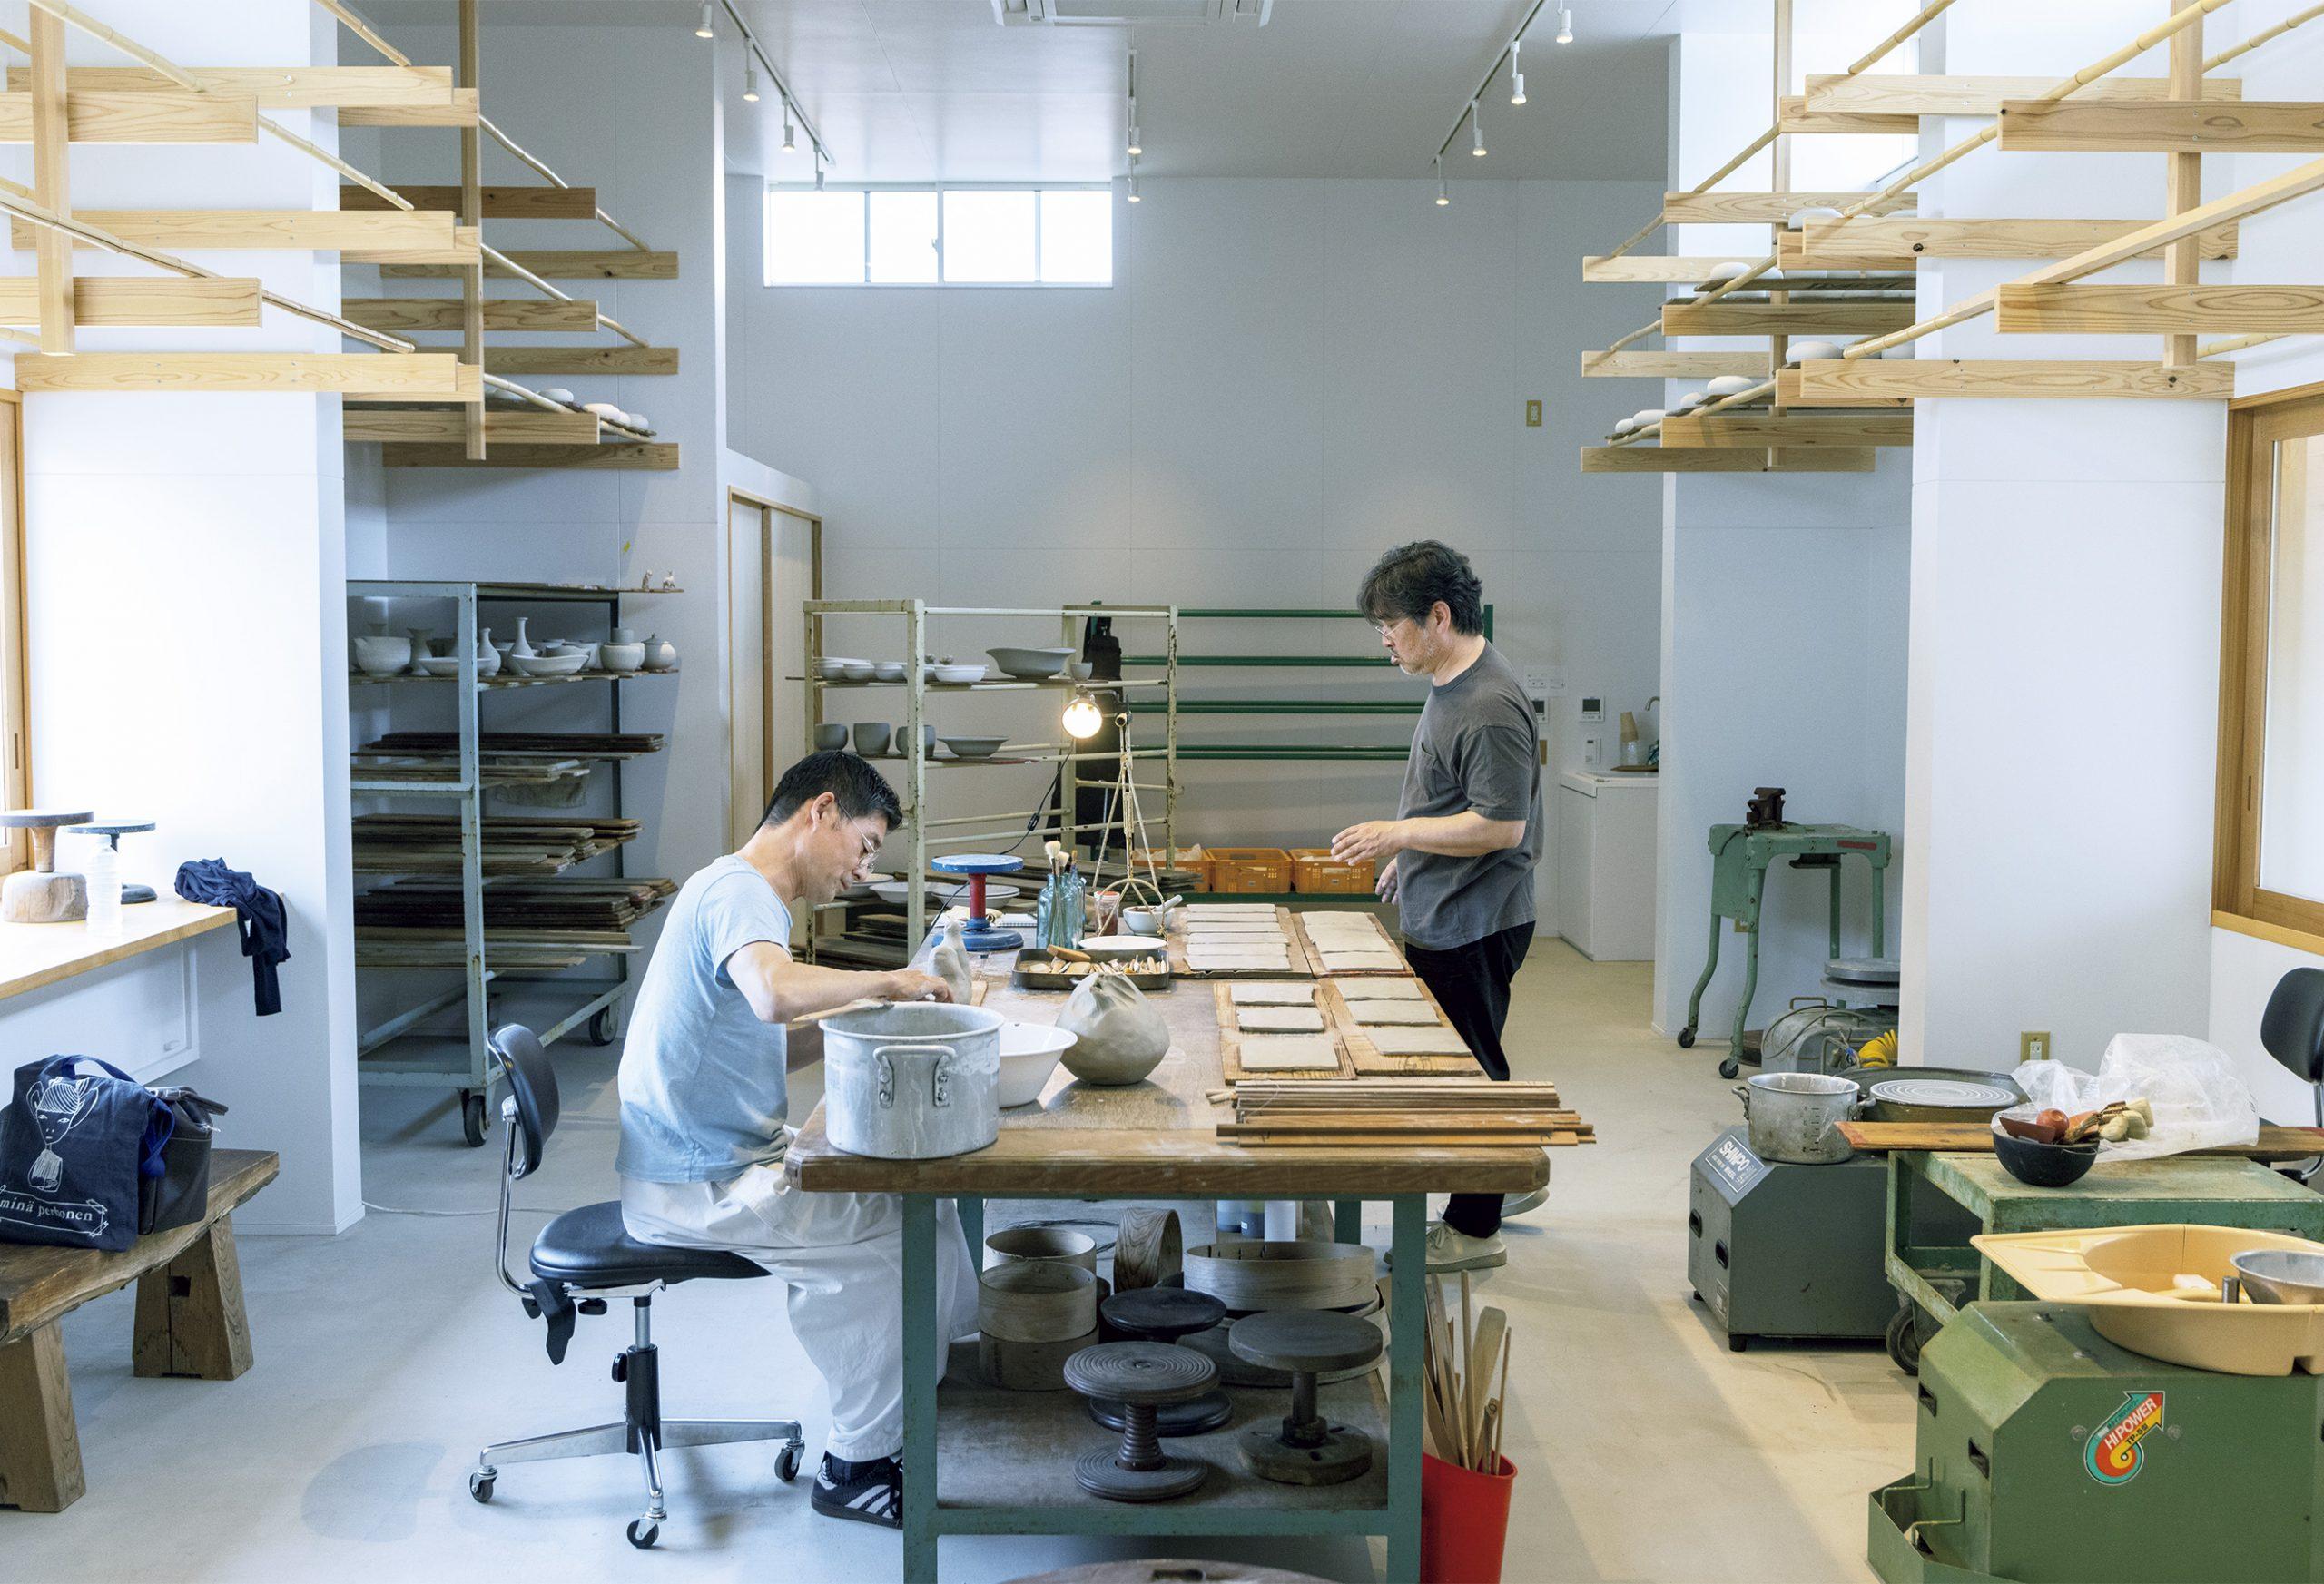 皆川 明＋内田鋼一が〈VISON〉で初めて共同制作。作陶したうつわの展覧会が始まりました。